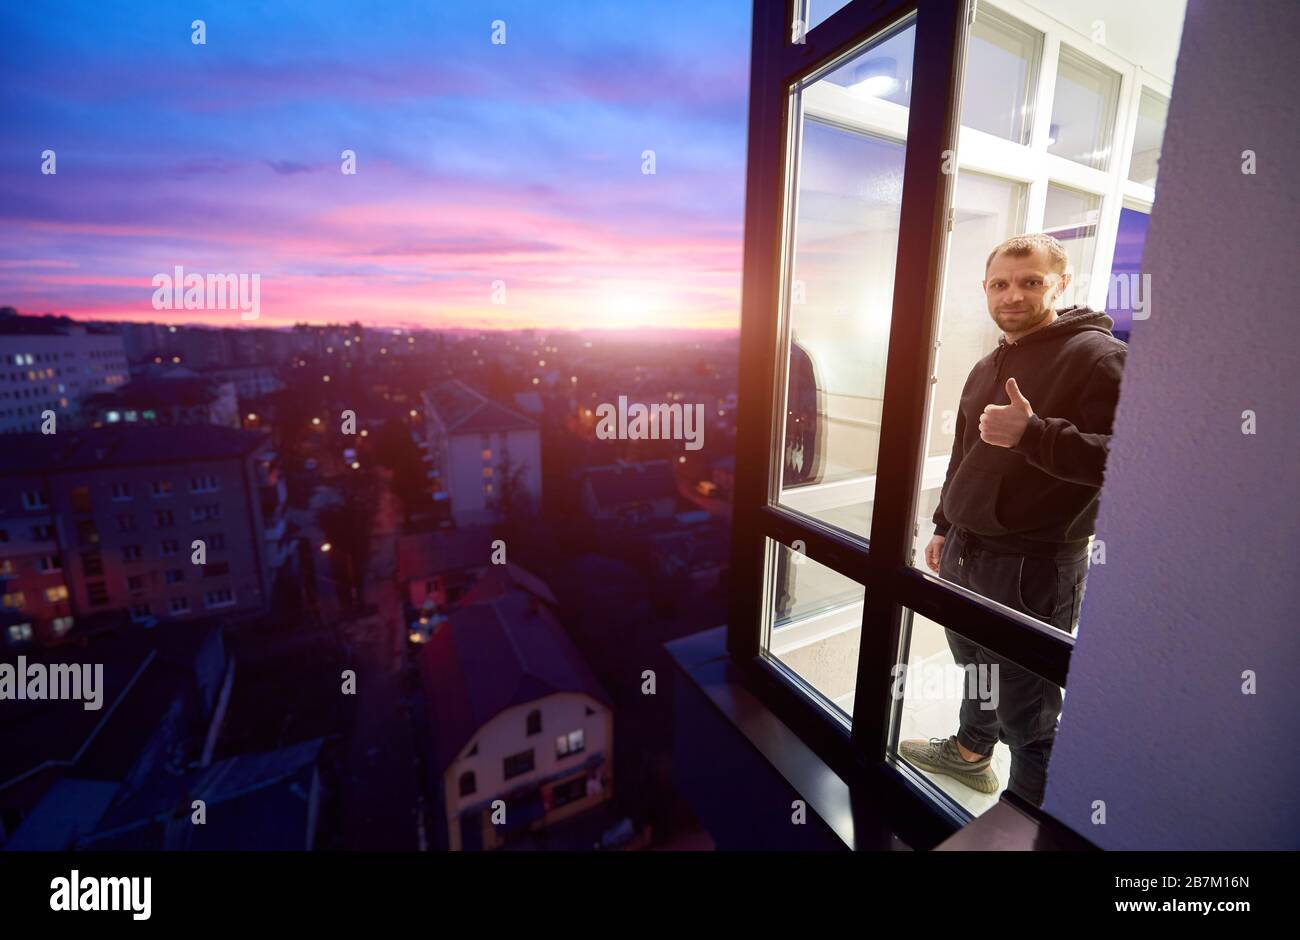 L'homme est debout sur un balcon avec des fenêtres panoramiques et montrant un pouce vers le haut comme s'inscrire avec un coucher de soleil magique à l'extérieur de la fenêtre. Paysage urbain de la hauteur et du ciel multicolore avec soleil couchant Banque D'Images